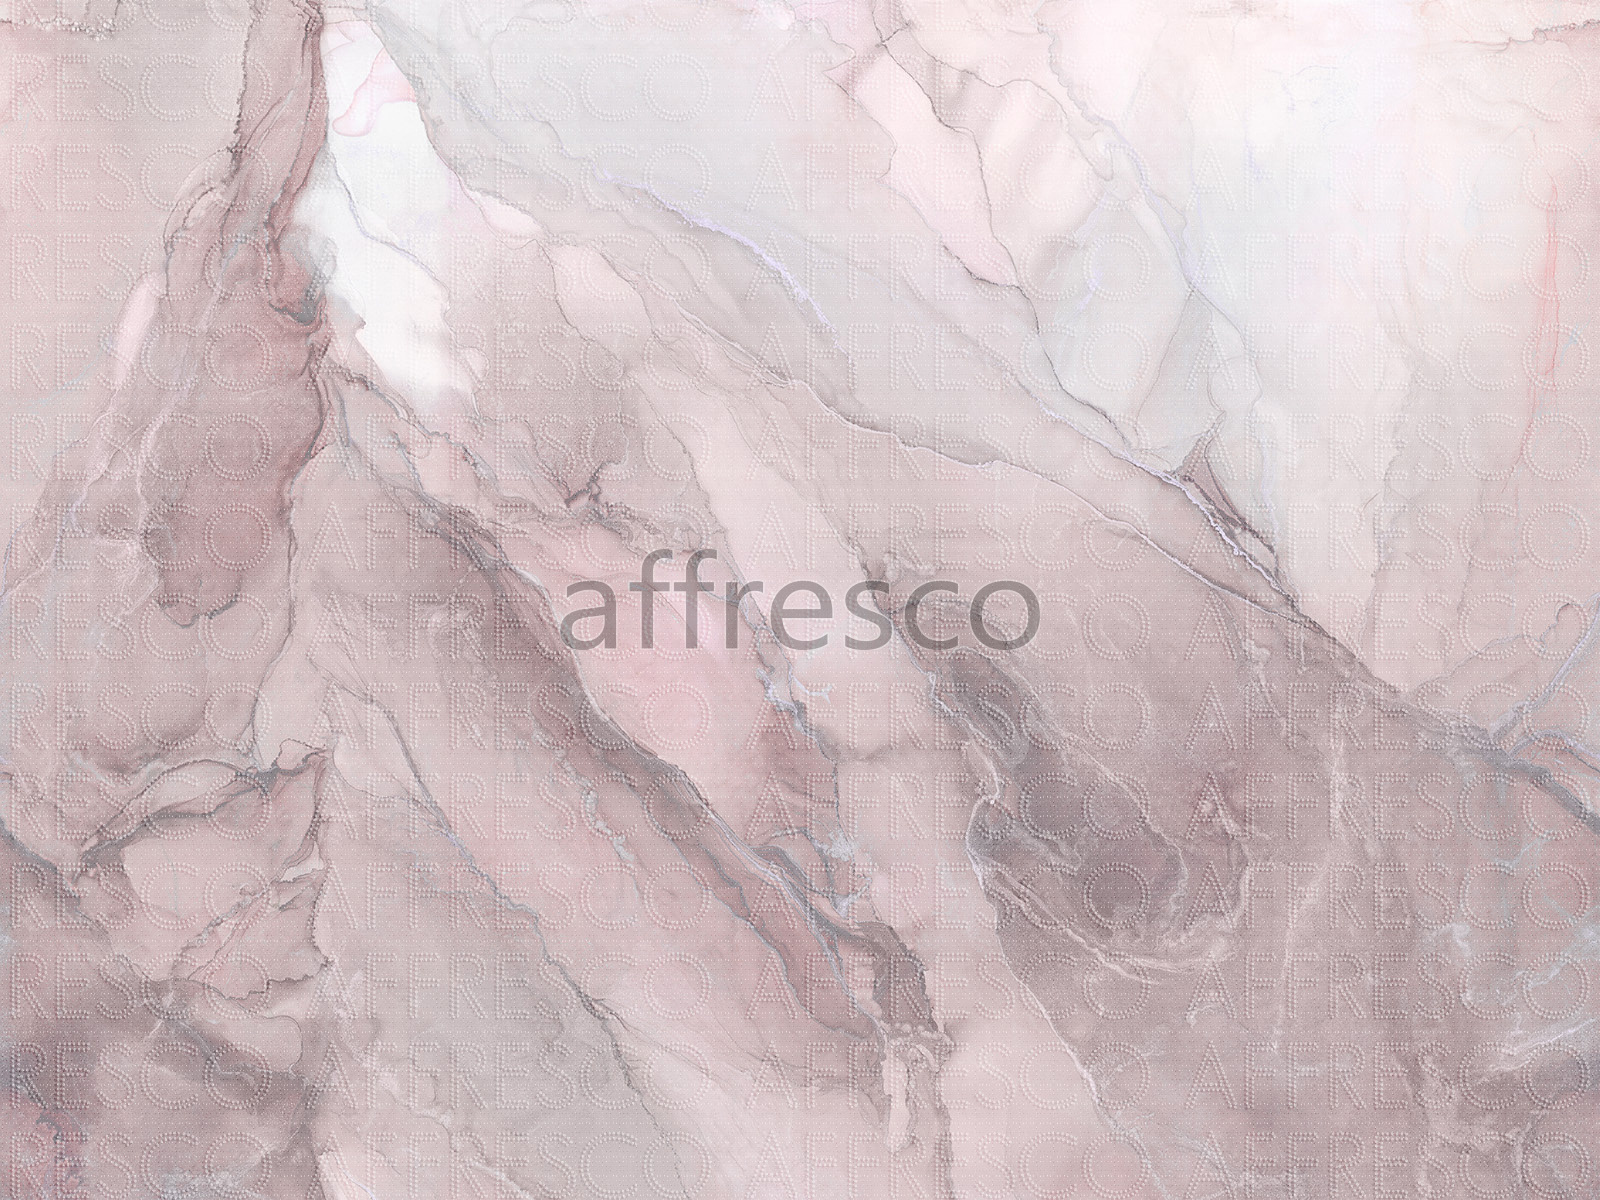 AF2105-COL3 | Emotion Art | Affresco Factory